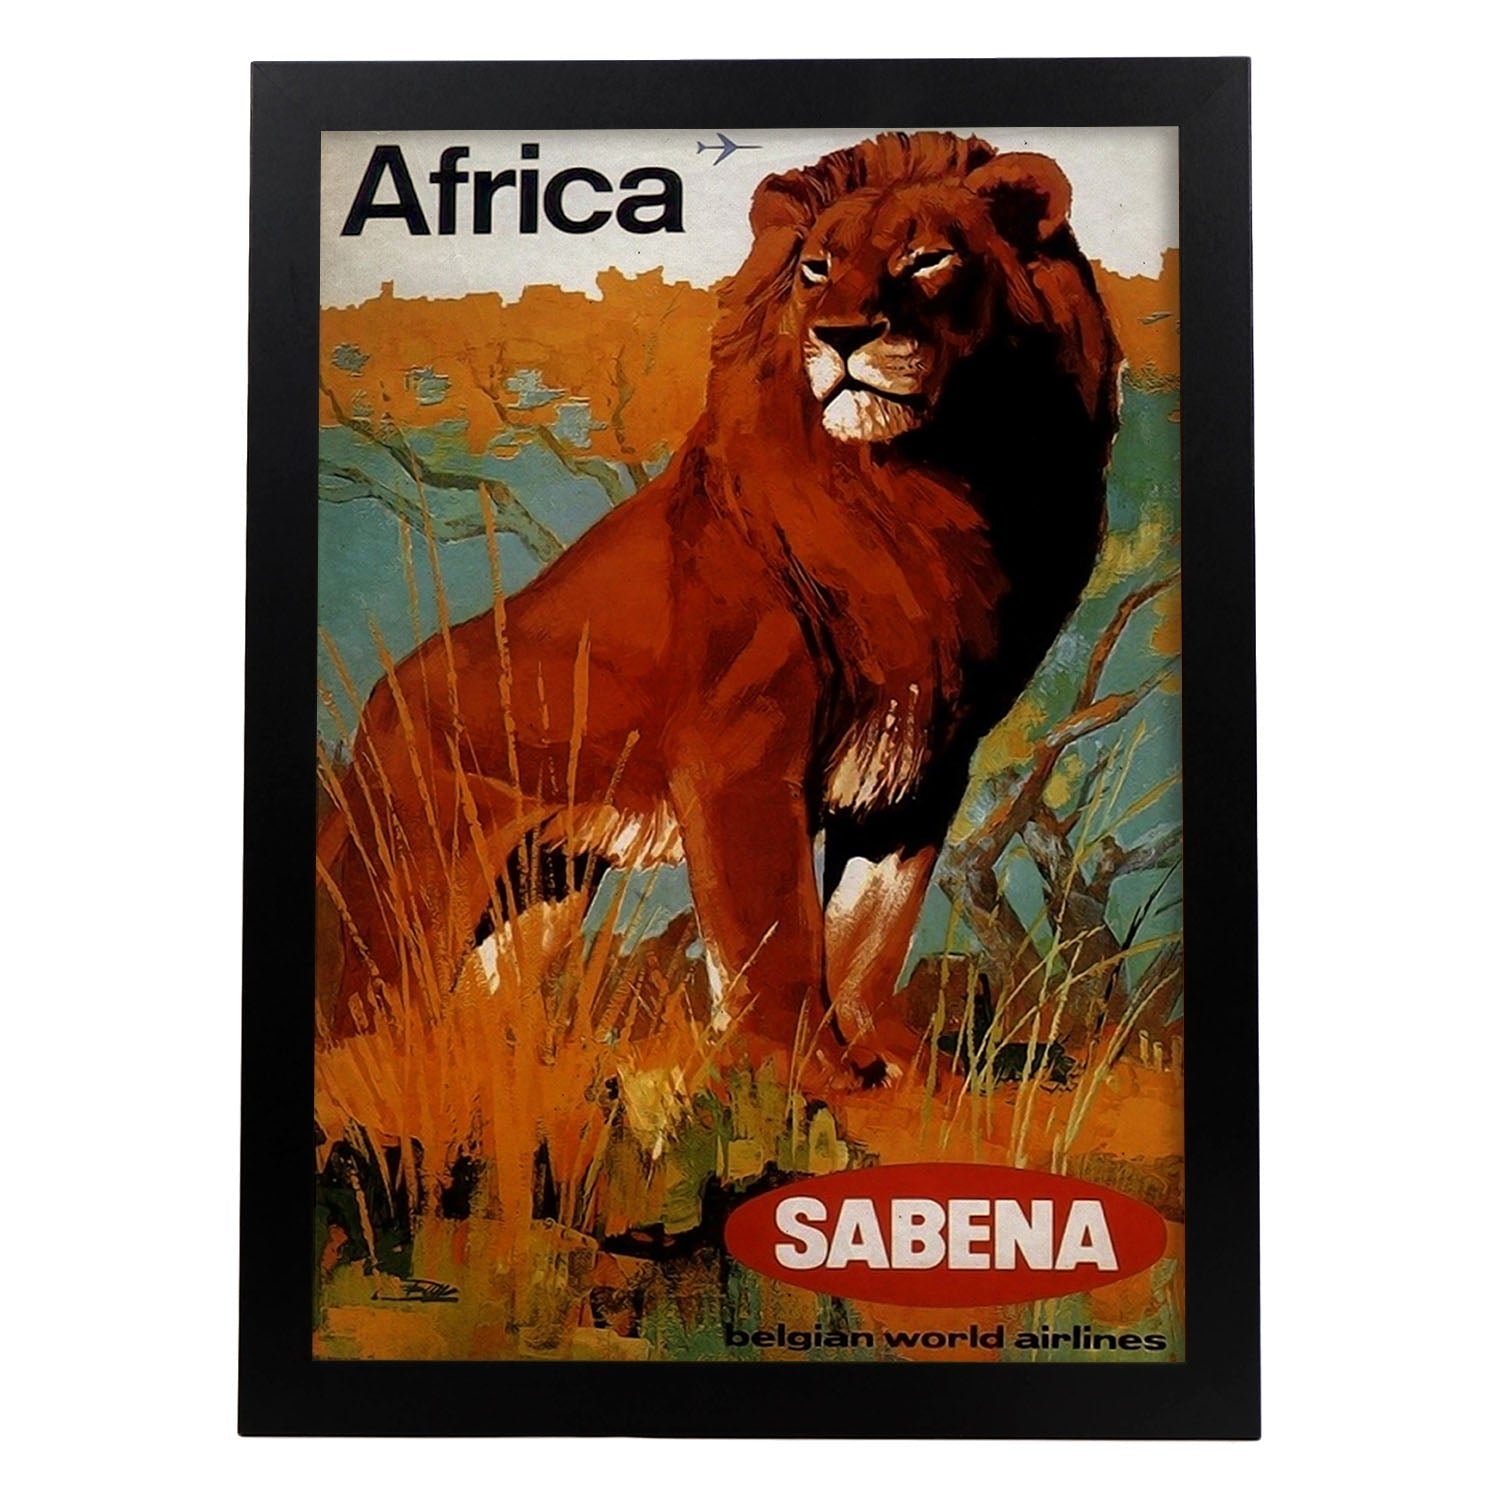 Poster vintage de Africa - Sabena. con imágenes vintage y de publicidad antigua.-Artwork-Nacnic-A3-Marco Negro-Nacnic Estudio SL